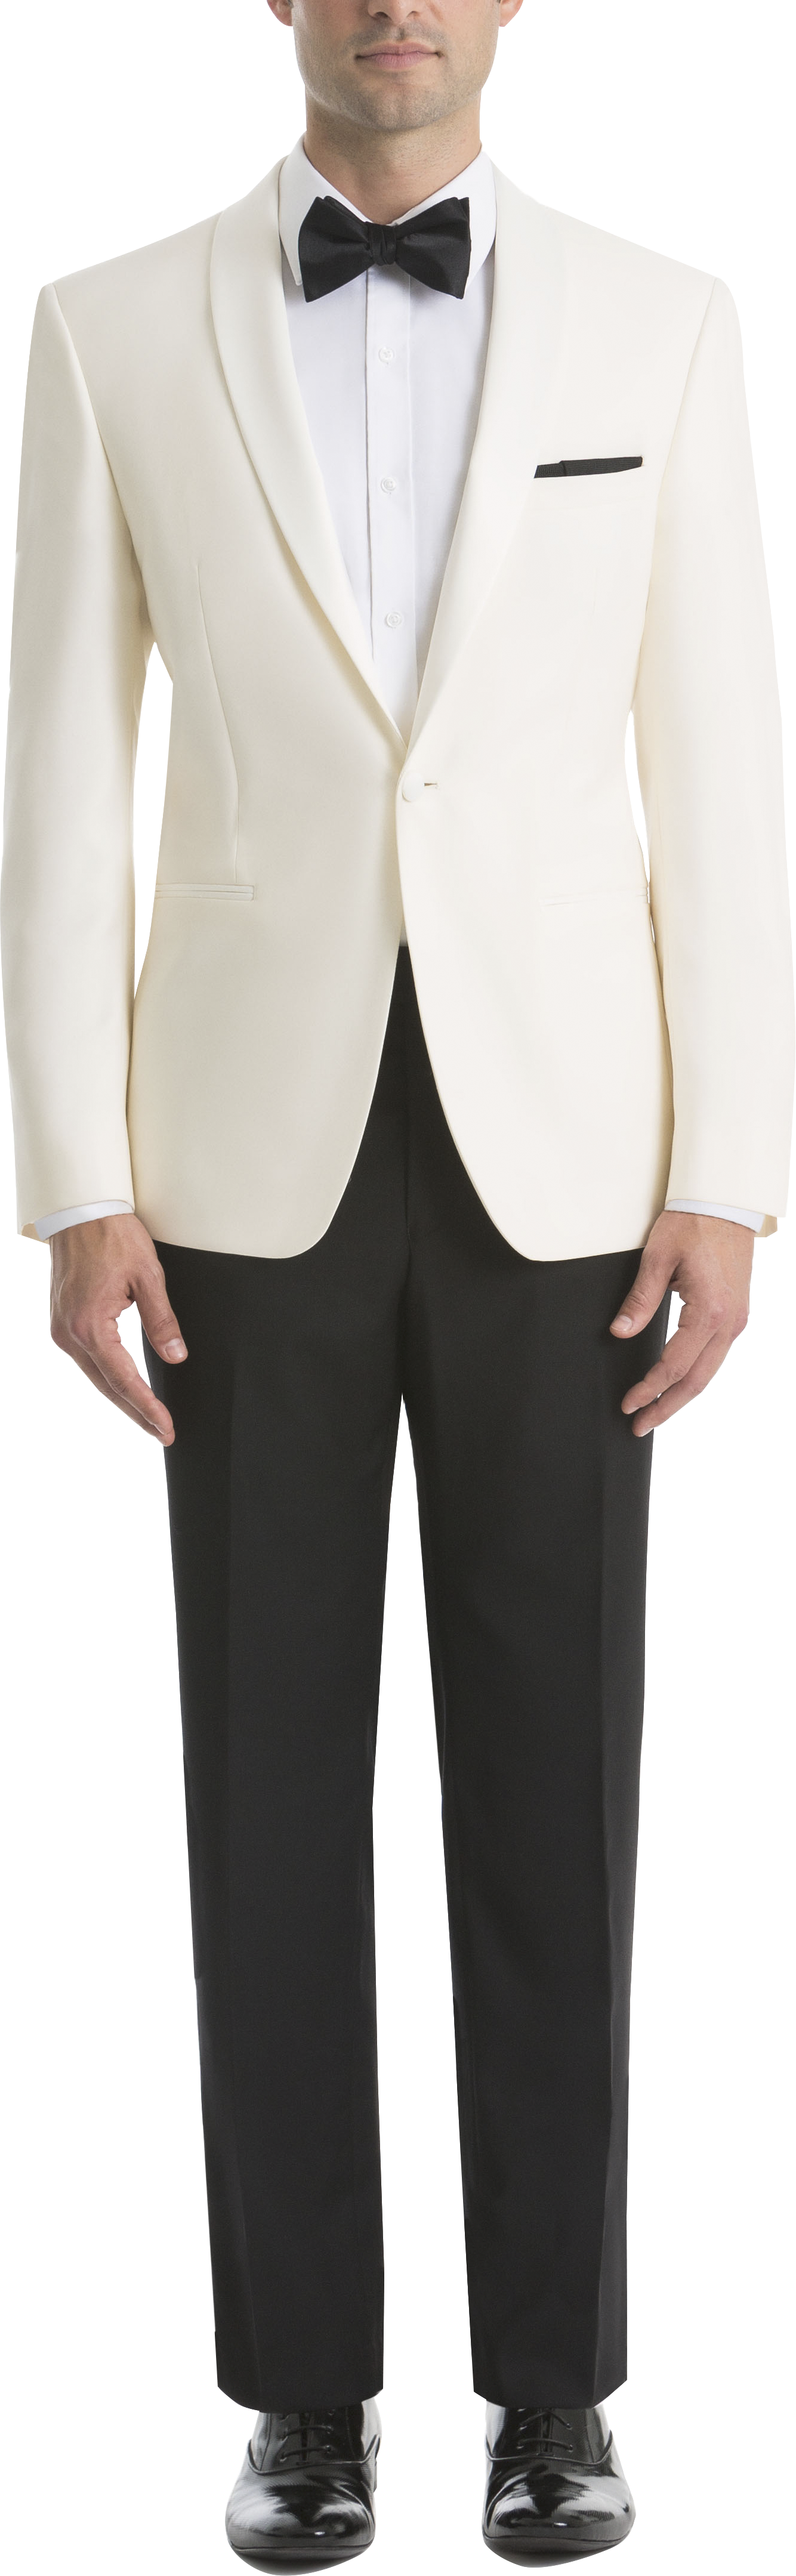 Lauren By Ralph Lauren Classic Fit Tuxedo Blazer, Cream - Mens Suits - Men's Wearhouse